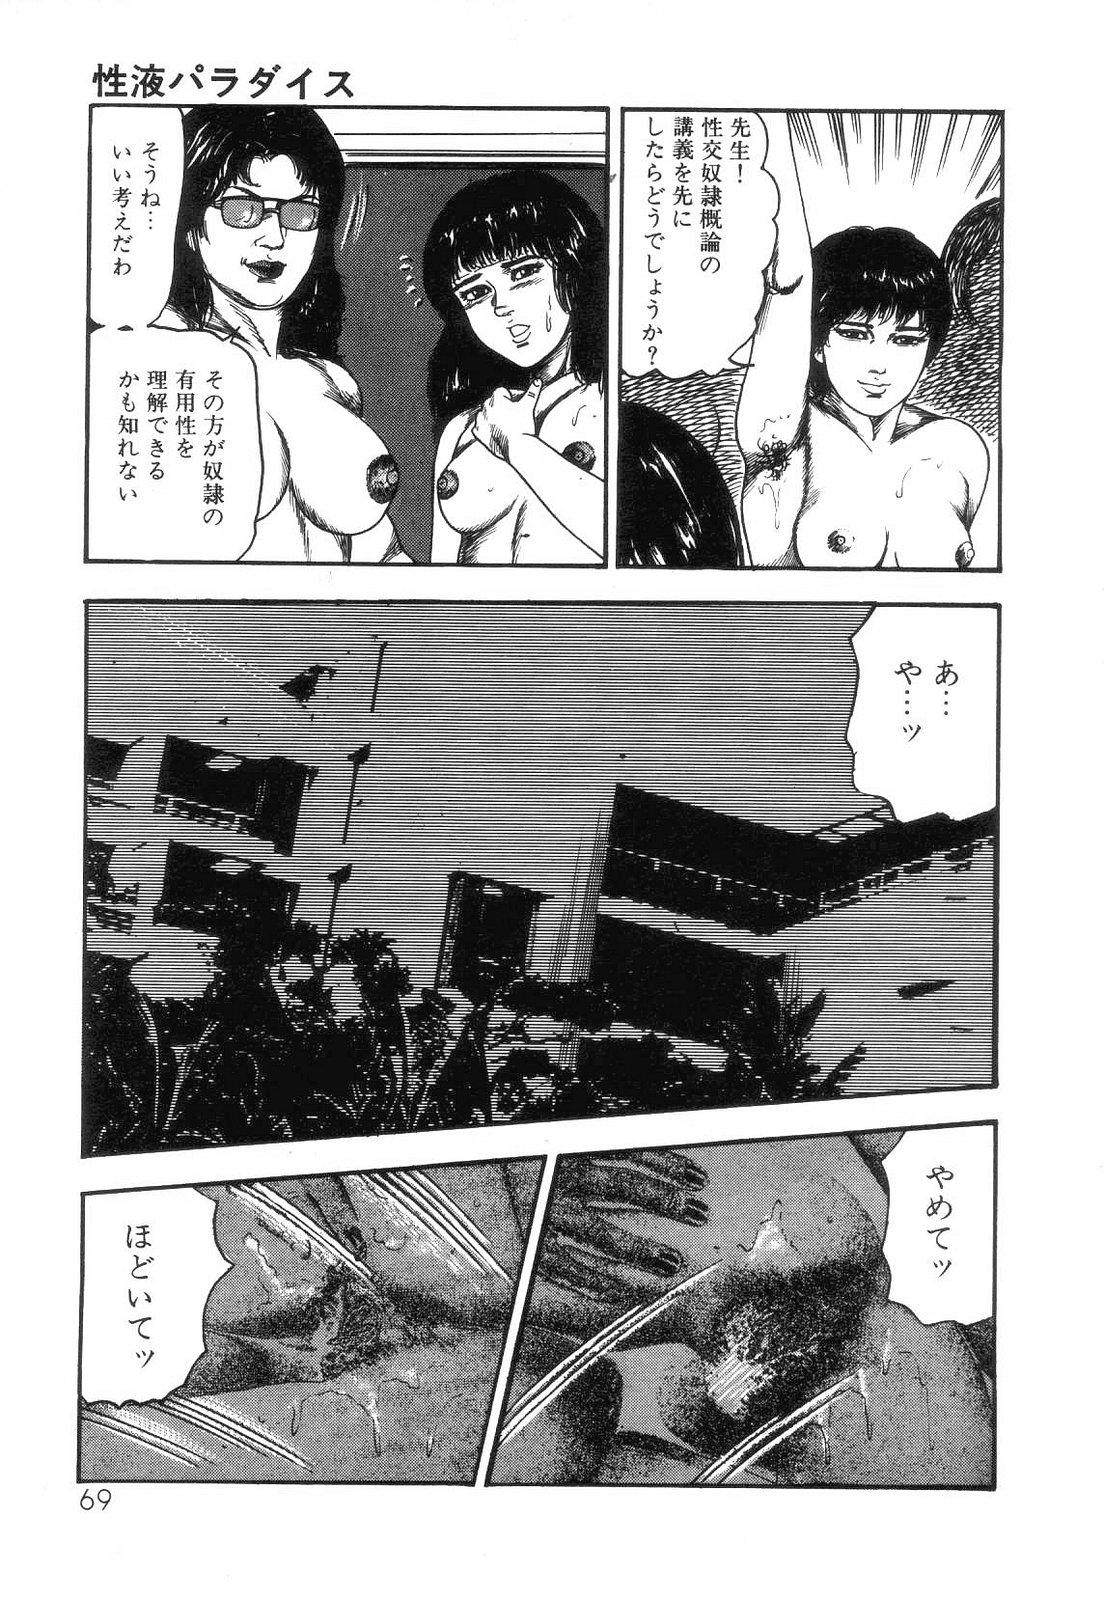 Shiro no Mokushiroku Vol. 4 - Bichiku Karen no Shou 71